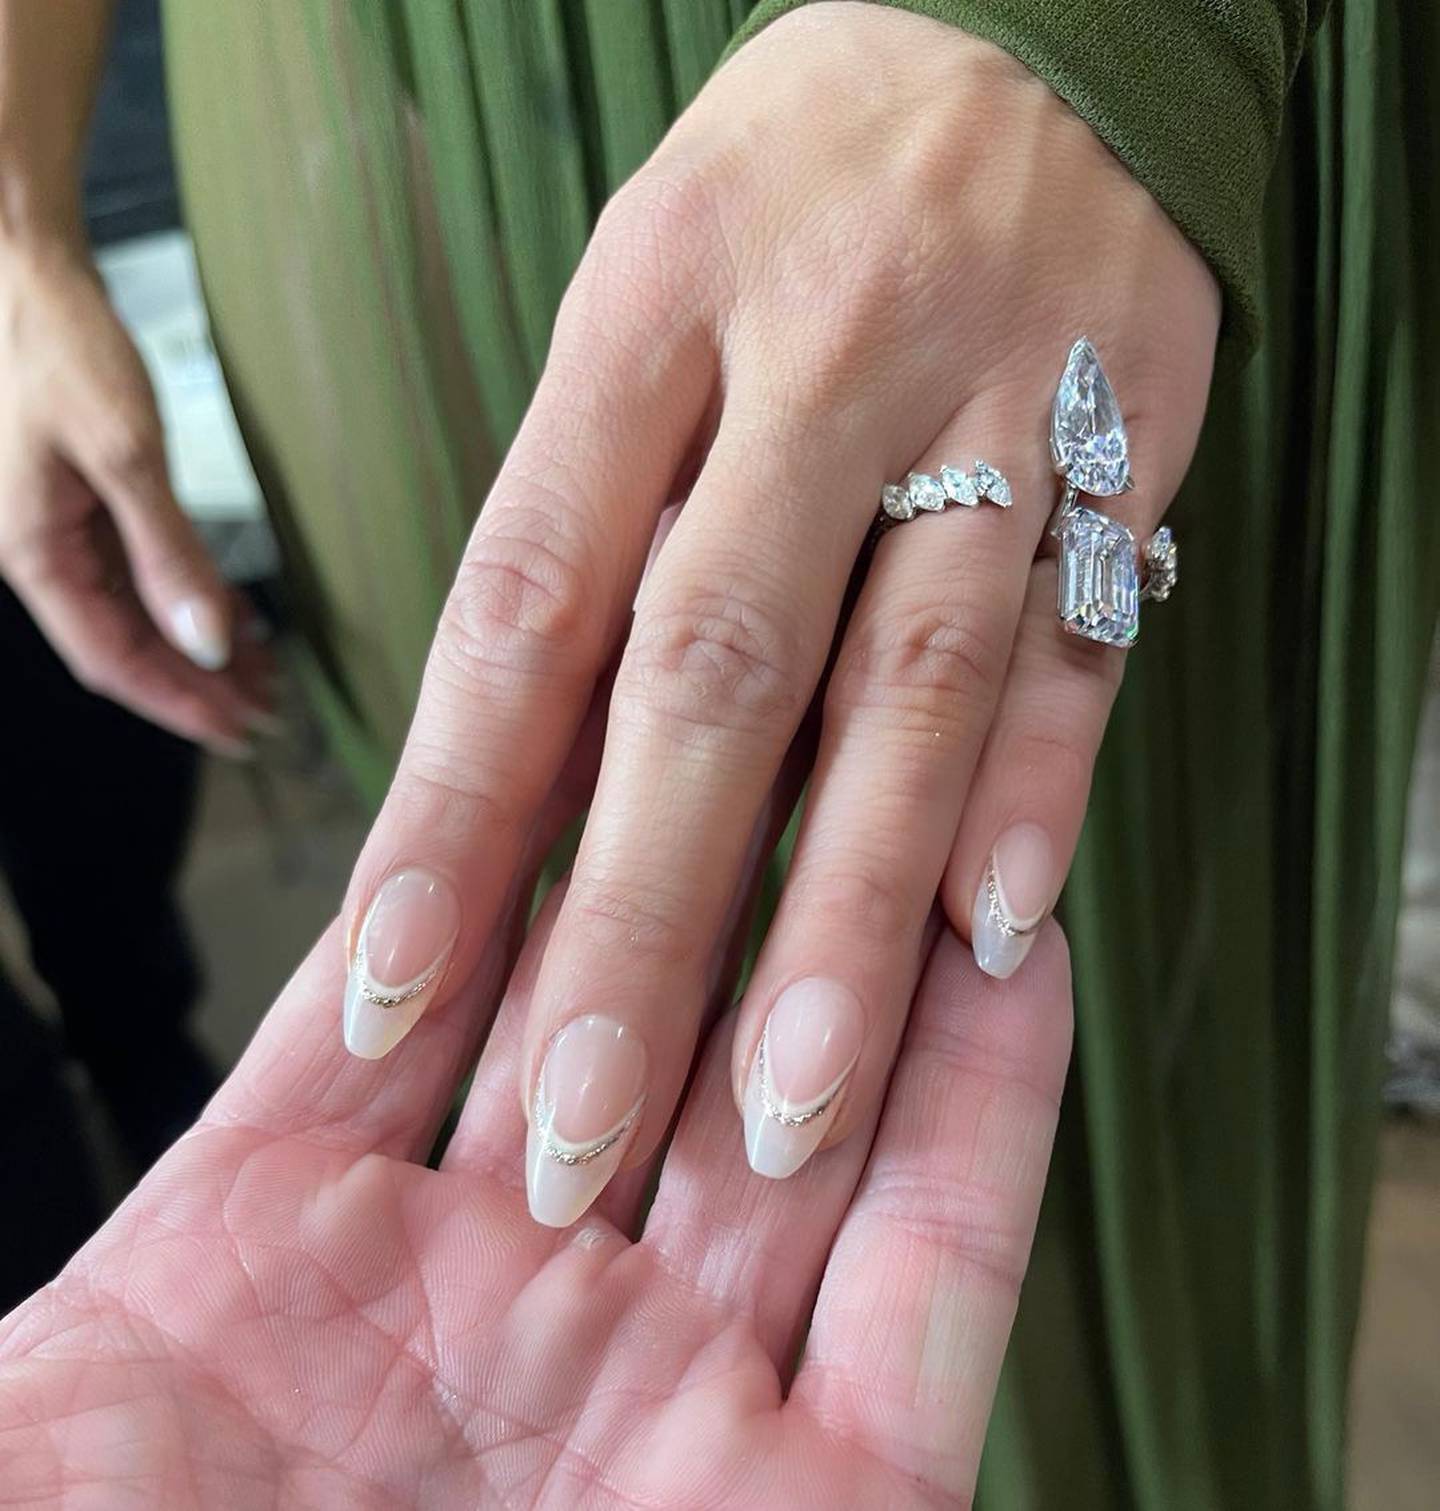 Jennifer Lopez ha llevado las manicuras más elegantes, en tendencia y ultrachic